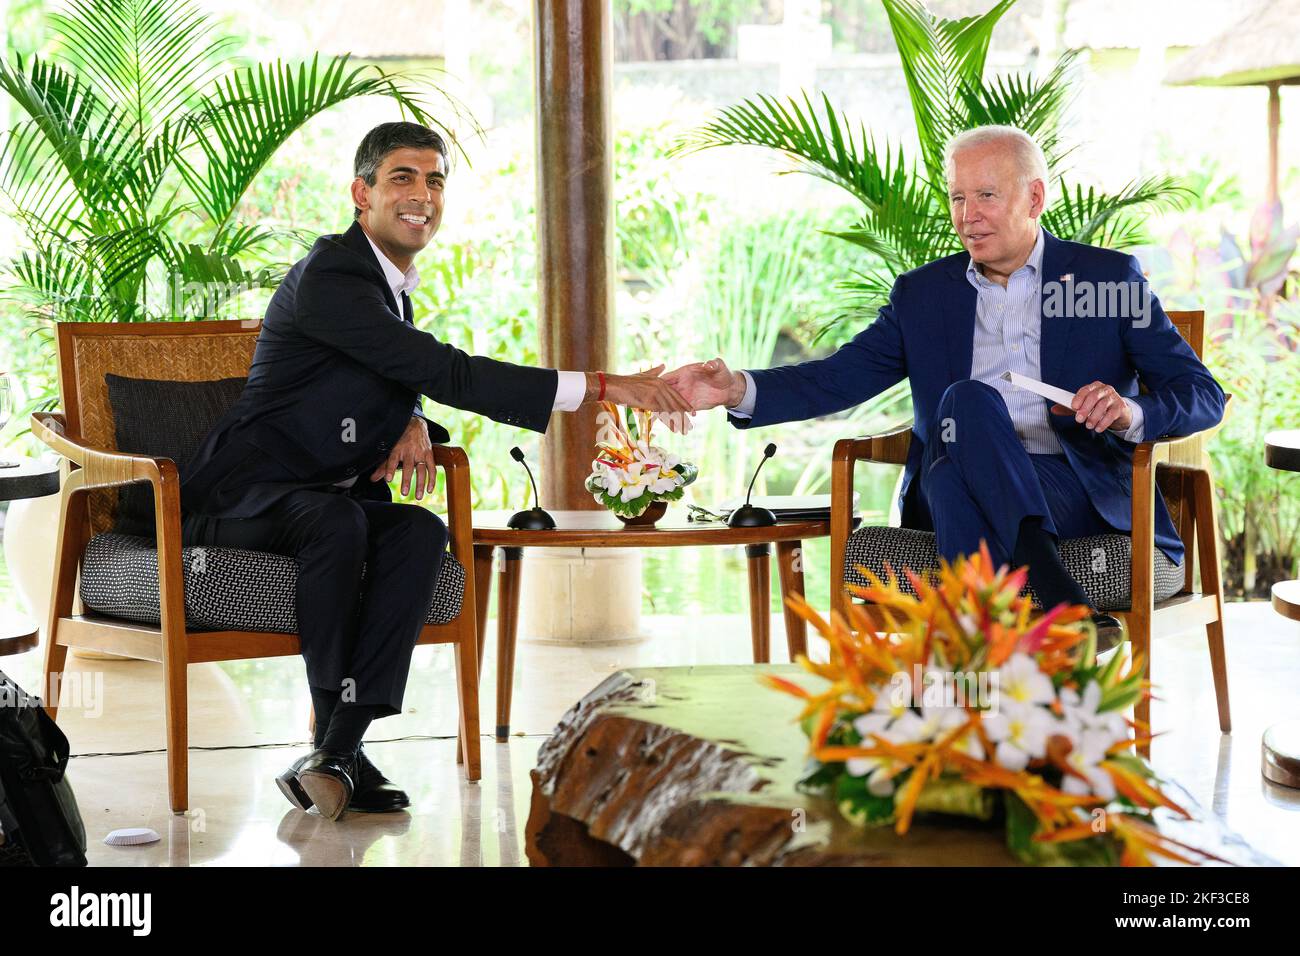 Premierminister Rishi Sunak trifft US-Präsident Joe Biden bei einem bilateralen Treffen auf dem Gipfel G20 in Nusa Dua, Bali, Indonesien. Bilddatum: Mittwoch, 16. November 2022. Stockfoto